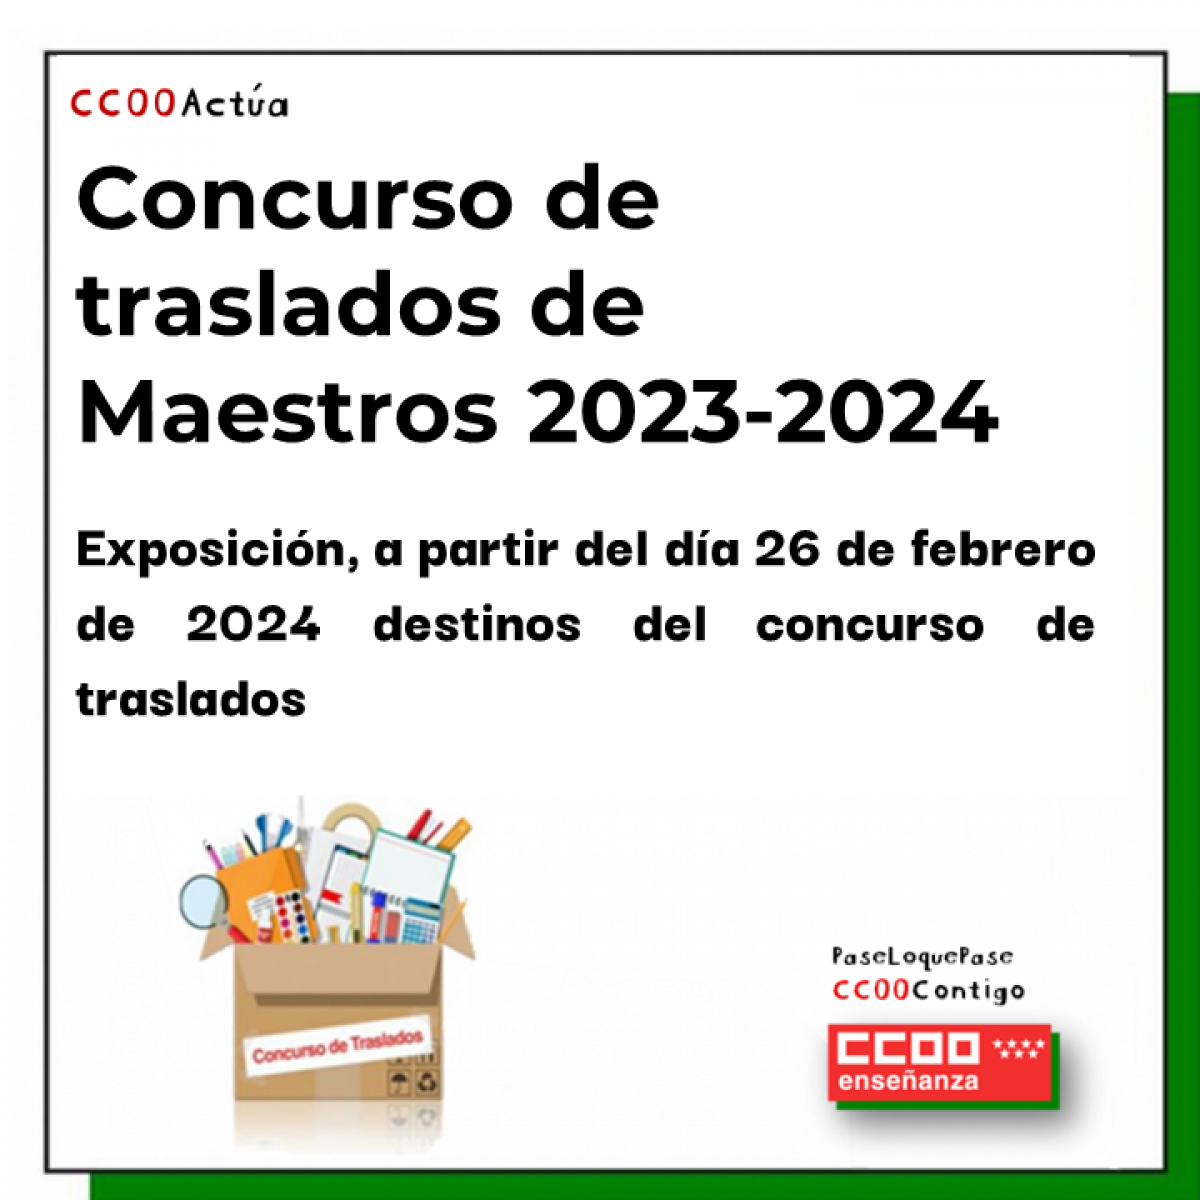 Concurso de traslados de Maestros 2023-2024